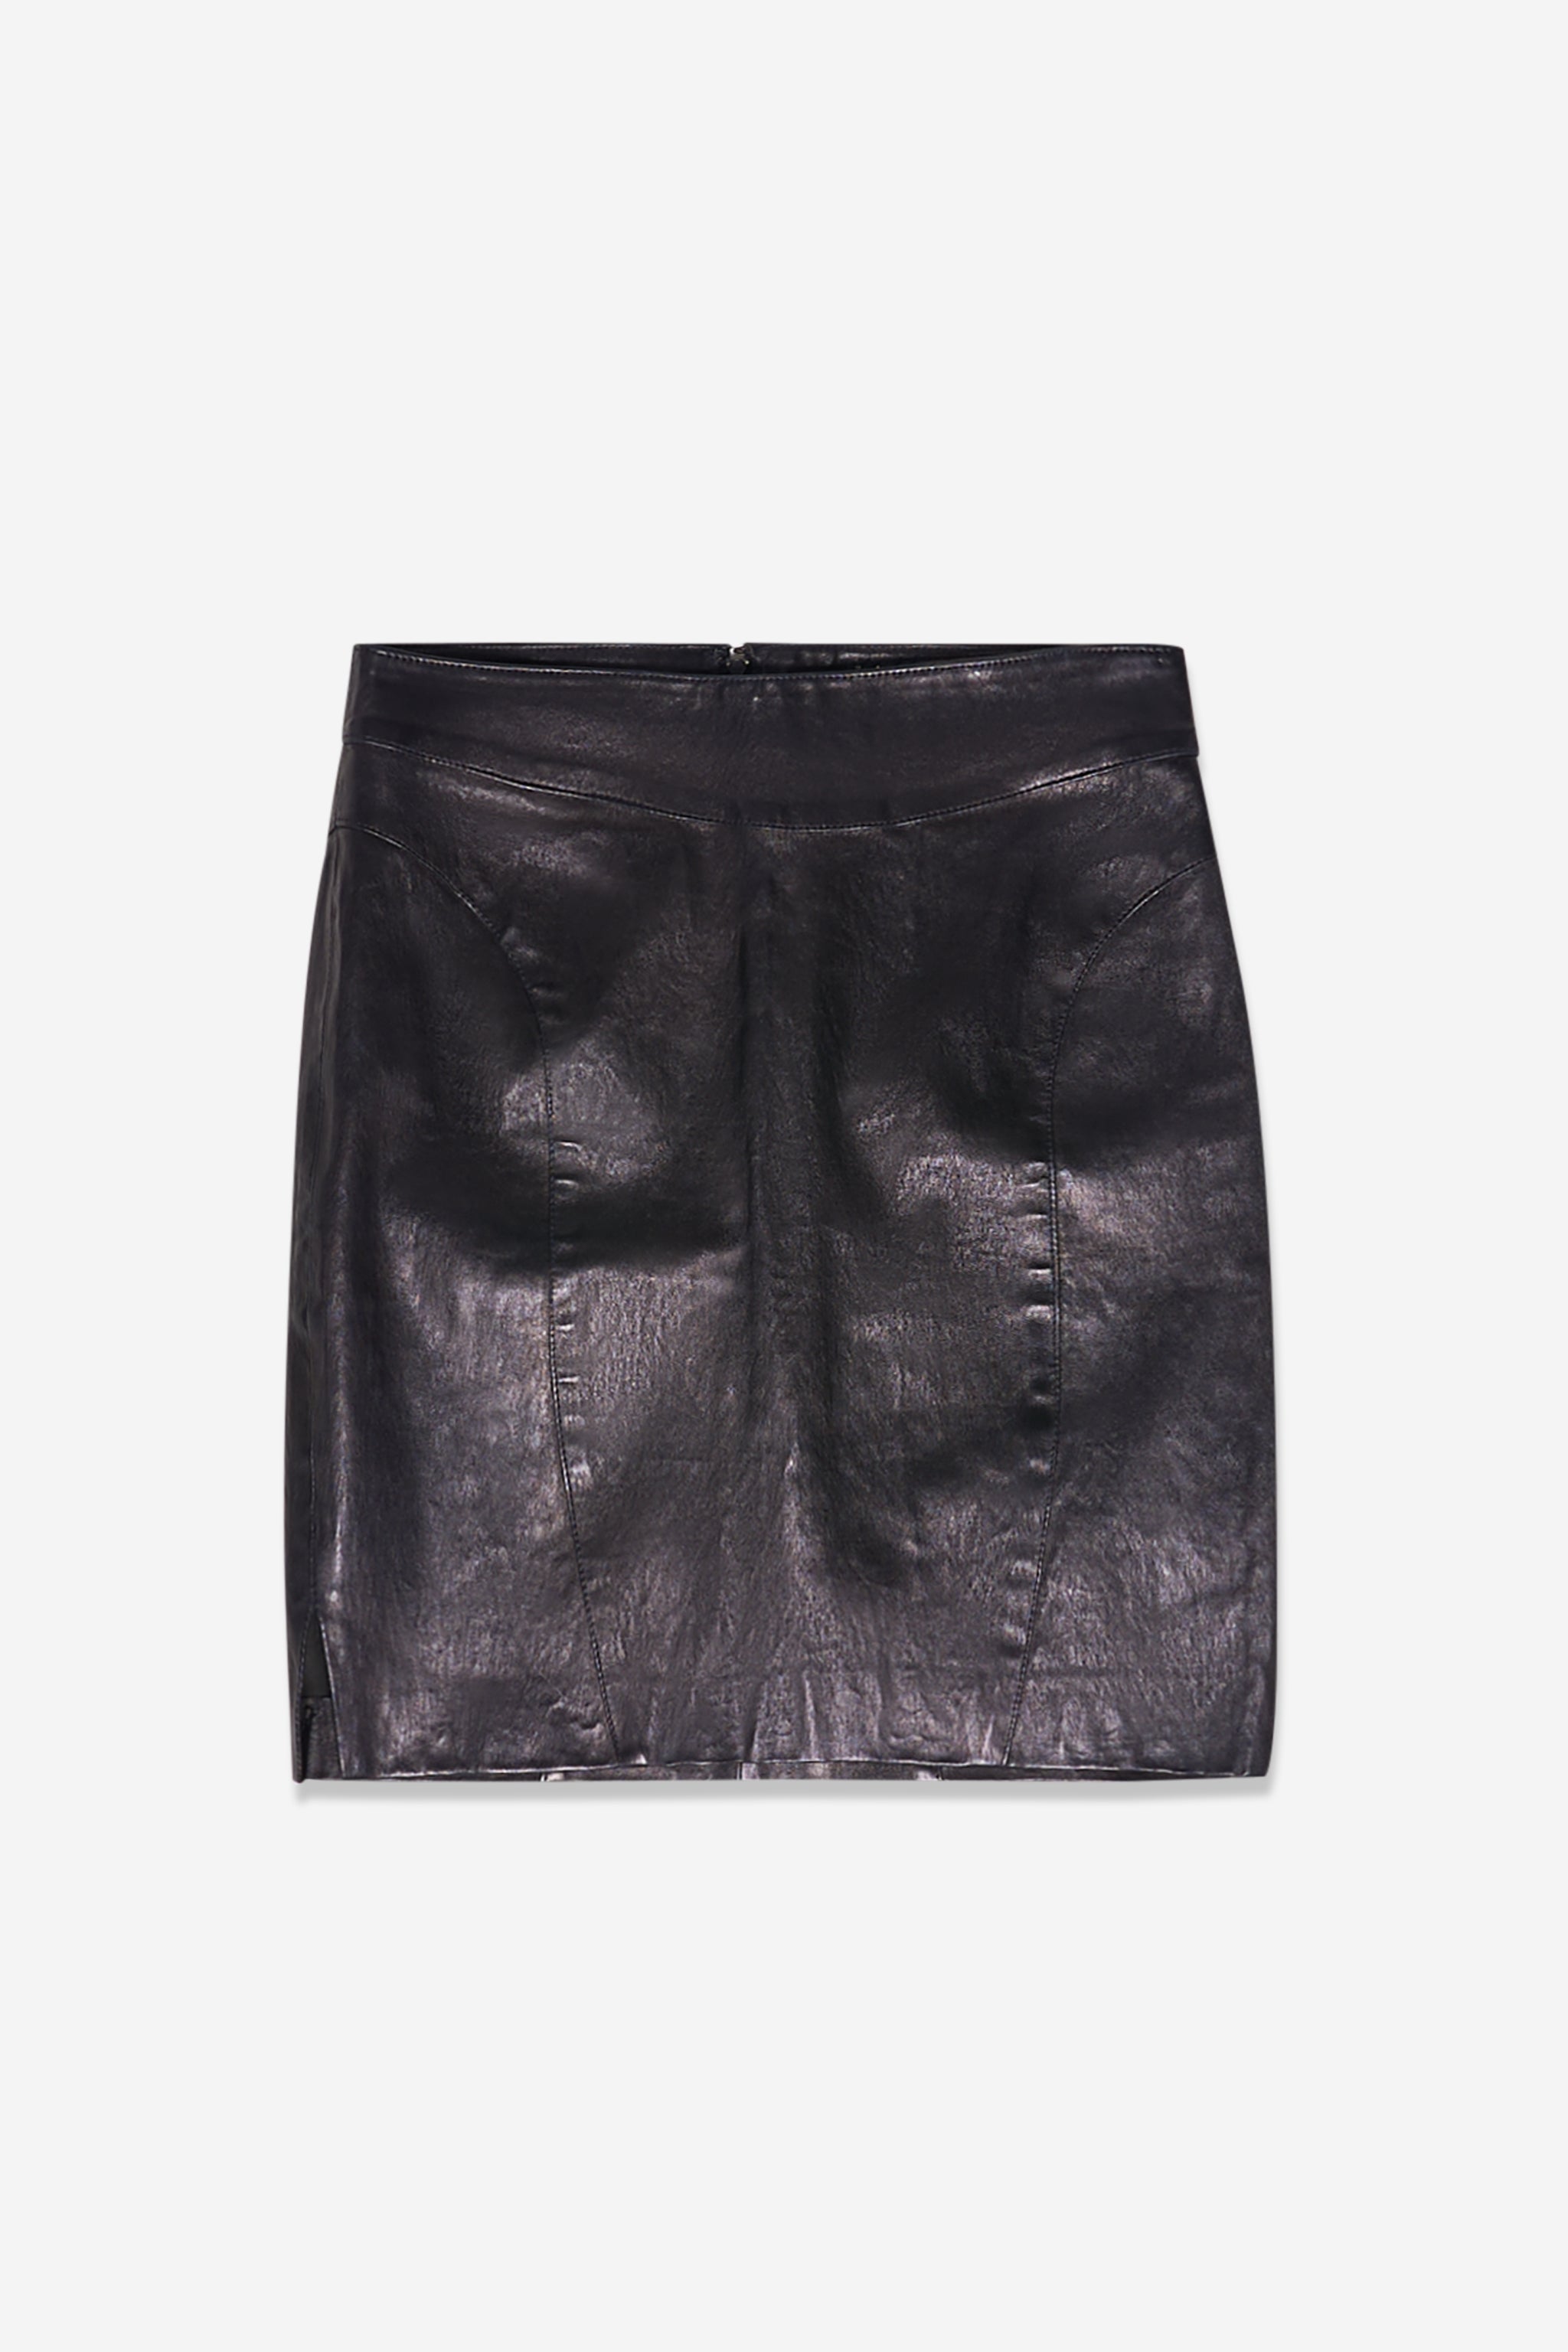 Shiny black leather skirt